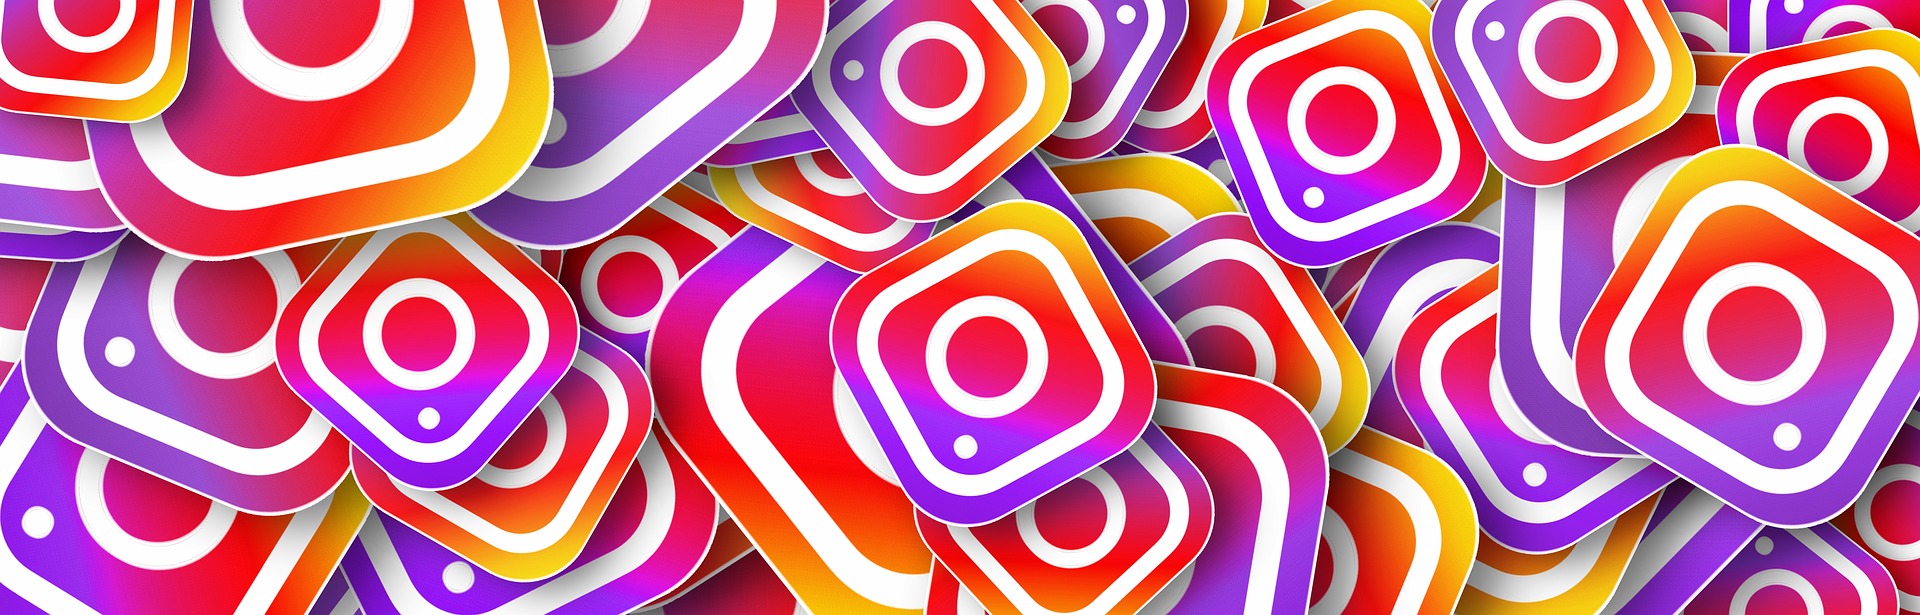 Hai già un Profilo Instagram aziendale? Ecco 4 top Trend del 2019 da usare subito